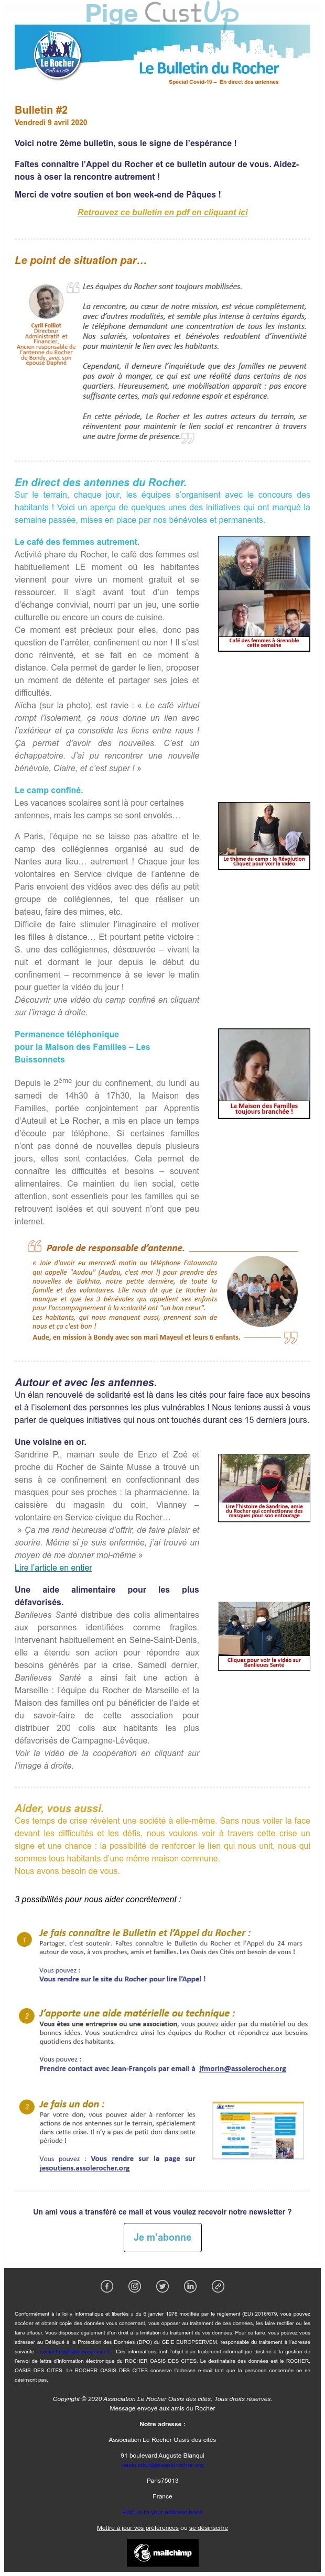 Exemple de Type de media  e-mailing - Le Rocher - Marketing relationnel - Calendaire (Noël, St valentin, Vœux, …) - Newsletter - Remerciements